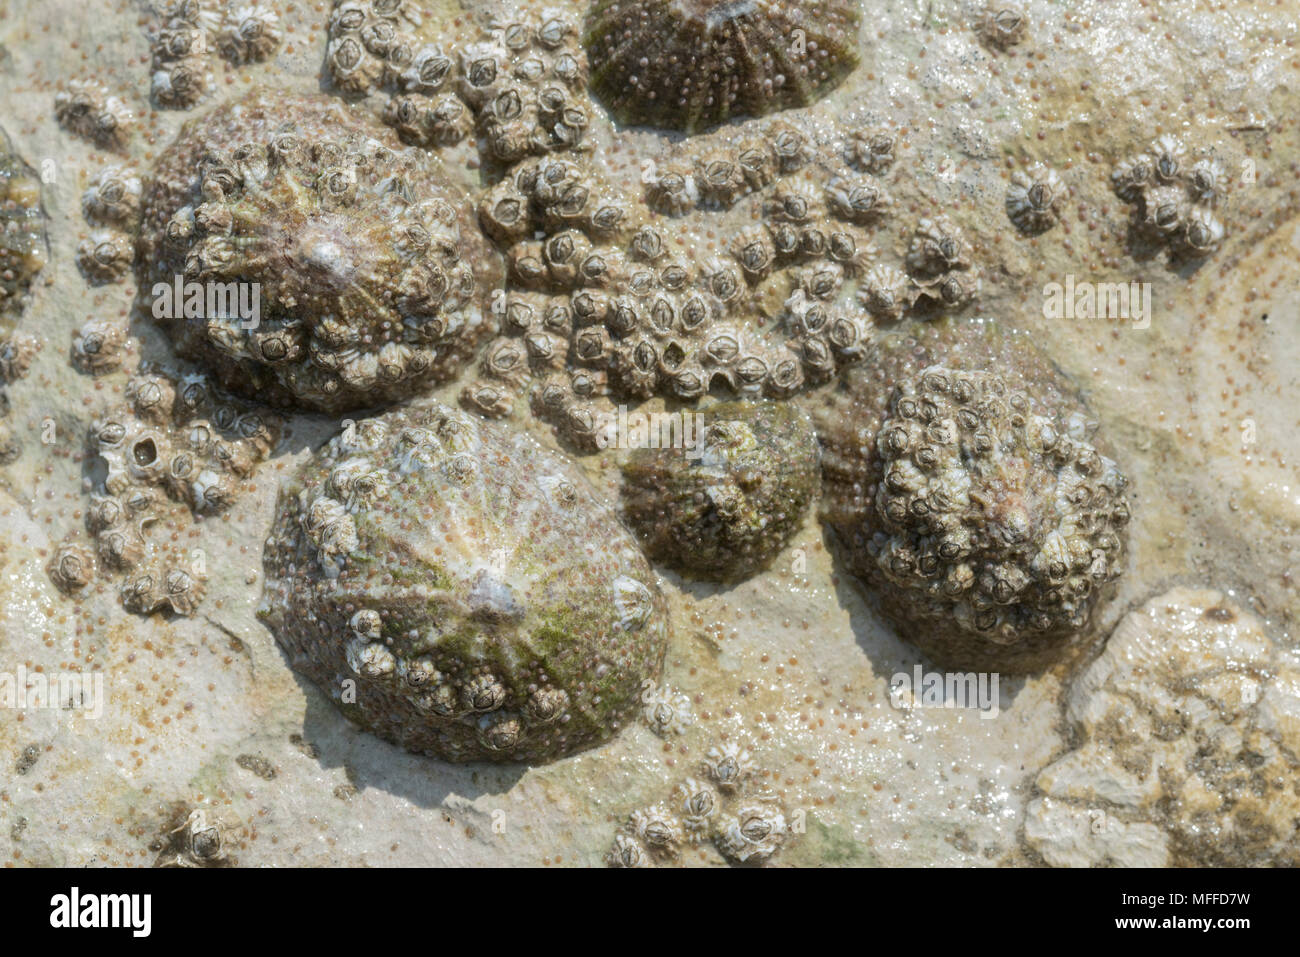 Limpets (Patella vulgaris) and Barnacles (Semibalanus balanoides) of various ages Stock Photo